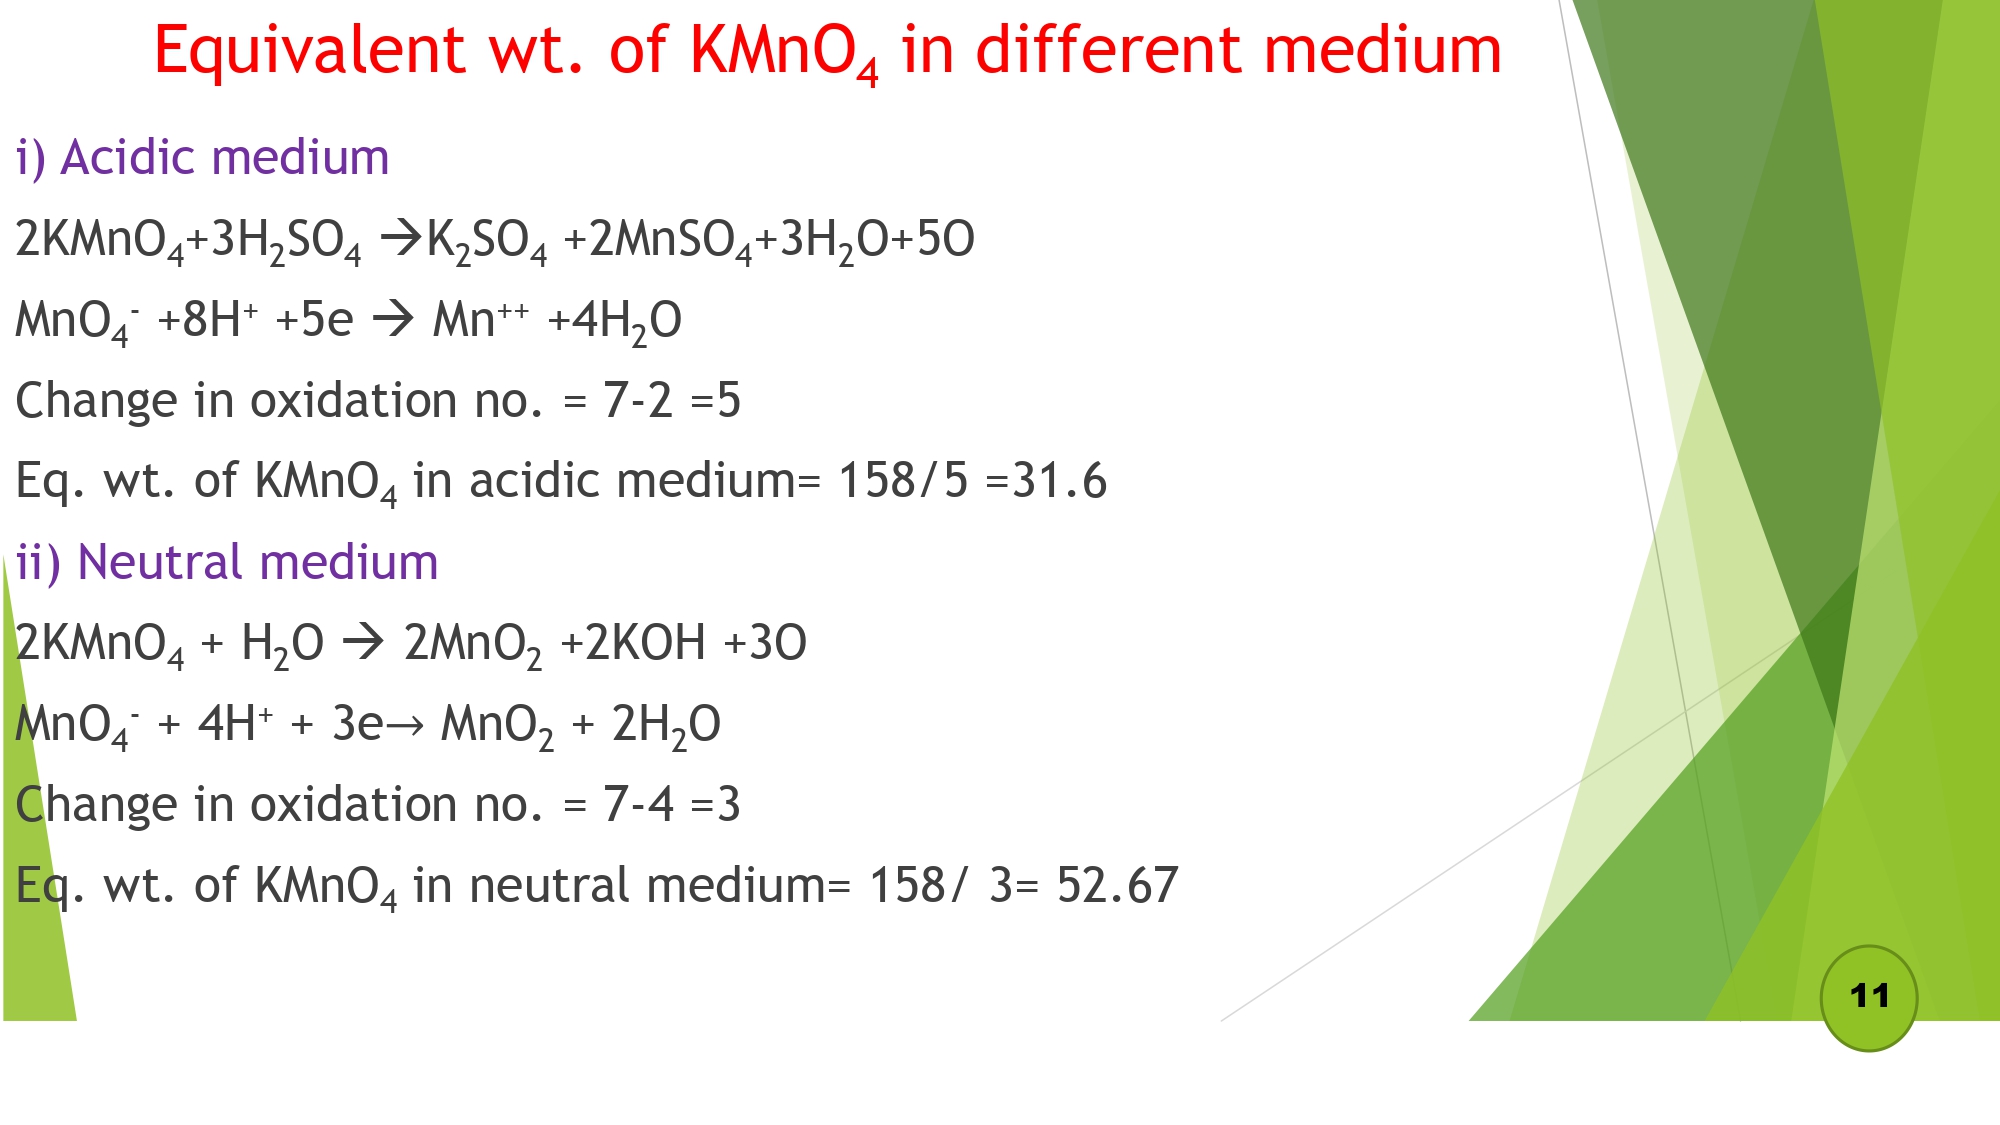 Equivalent wt. of KMnO4 in different medium Acidic medium and Neutral medium